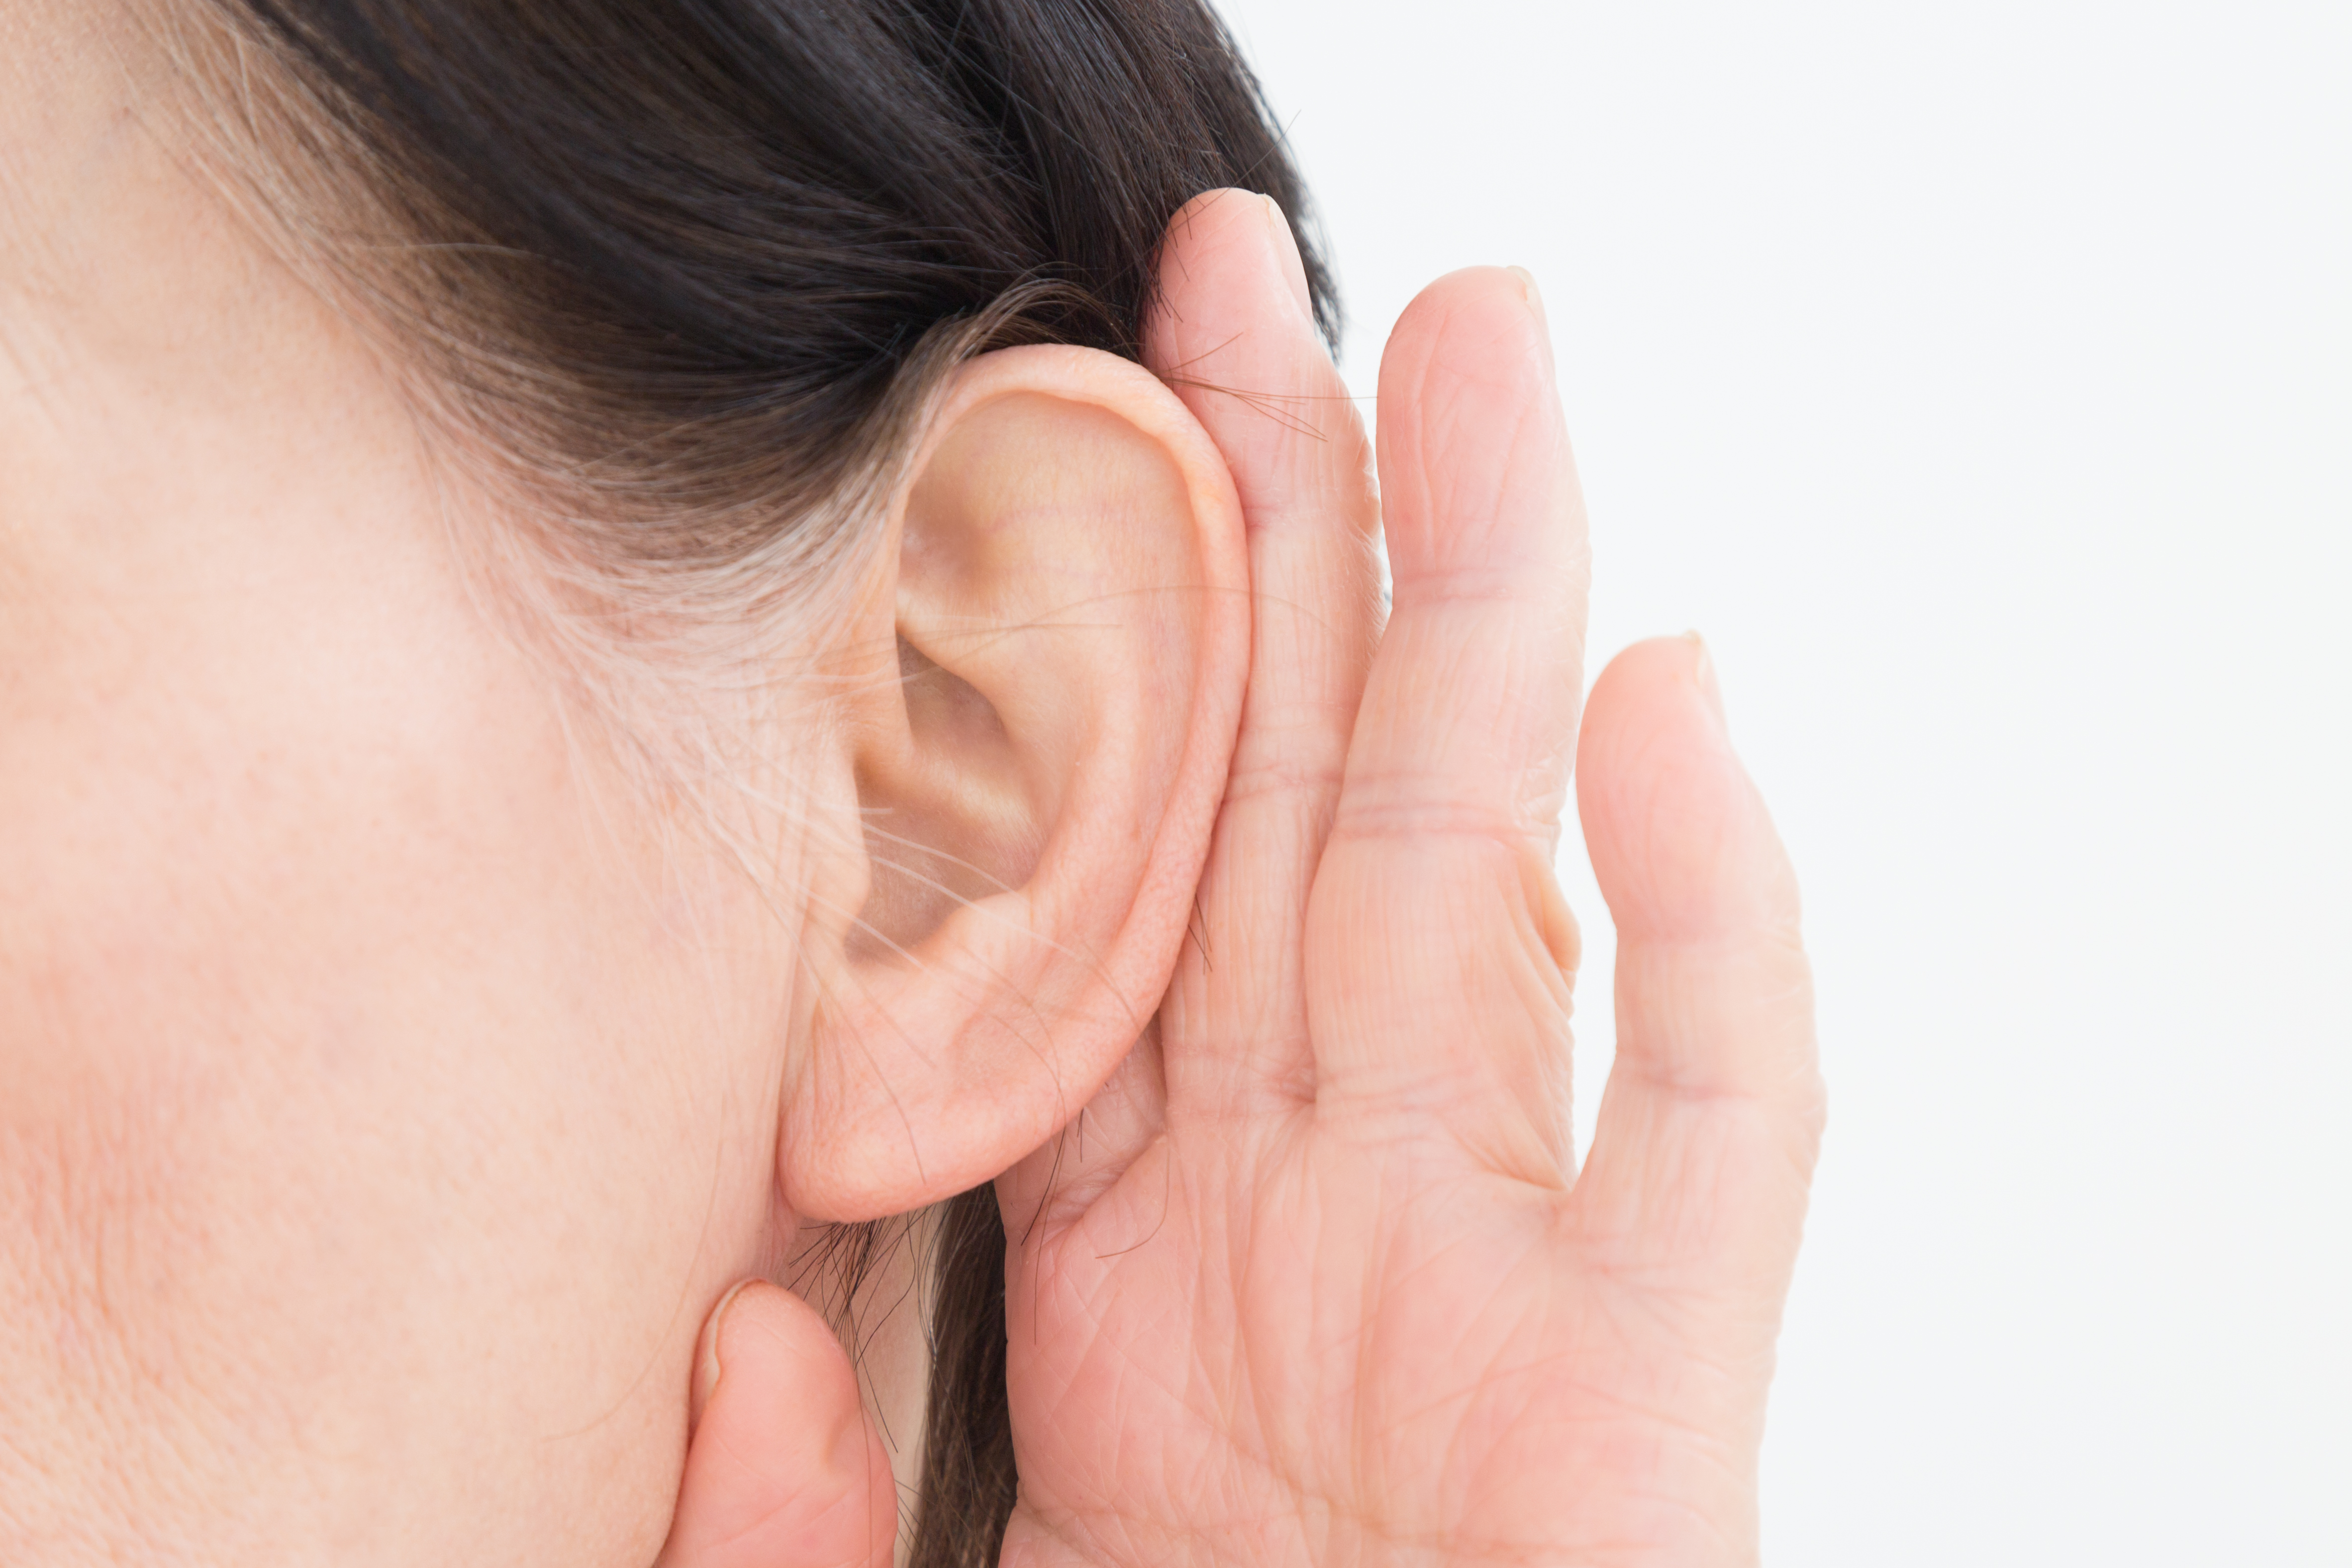 難聴も認知症の要因に。聴力低下の改善は脳の活動にとって大切！ pixta_37299263_L.jpg